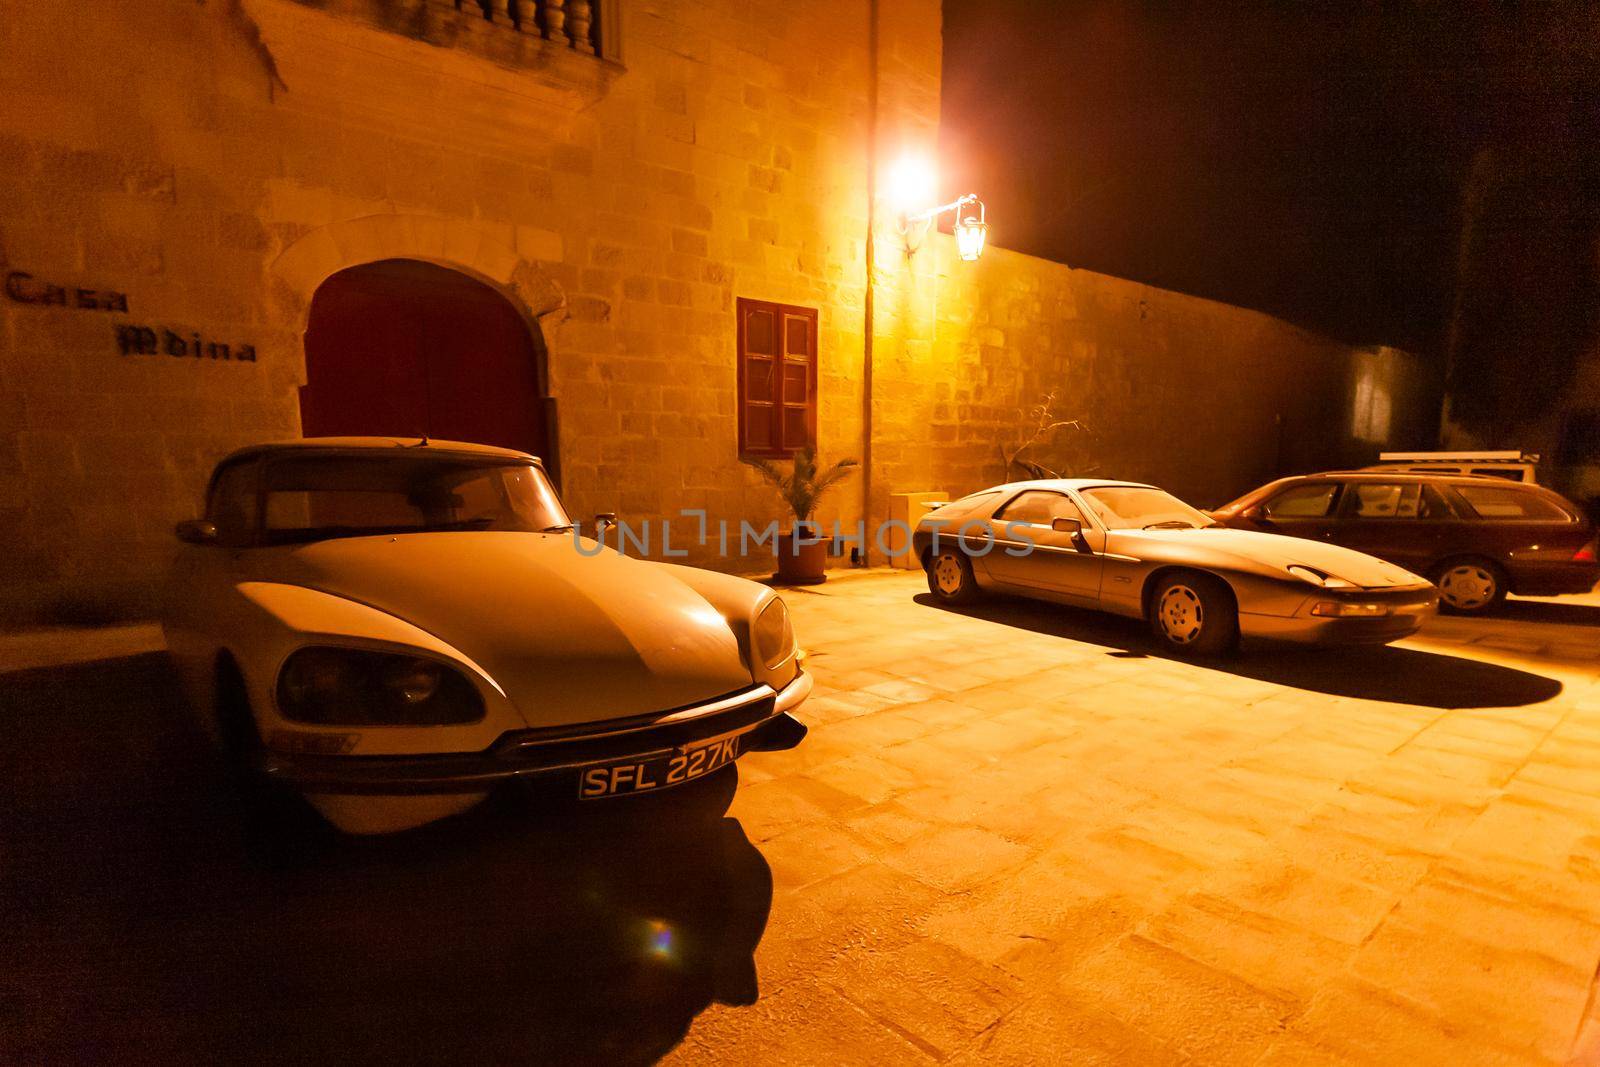 MDINA, MALTA - February 19, 2010. Old timer cars parked near stony buildings of Mdina, ancient capital of Malta. by aksenovko